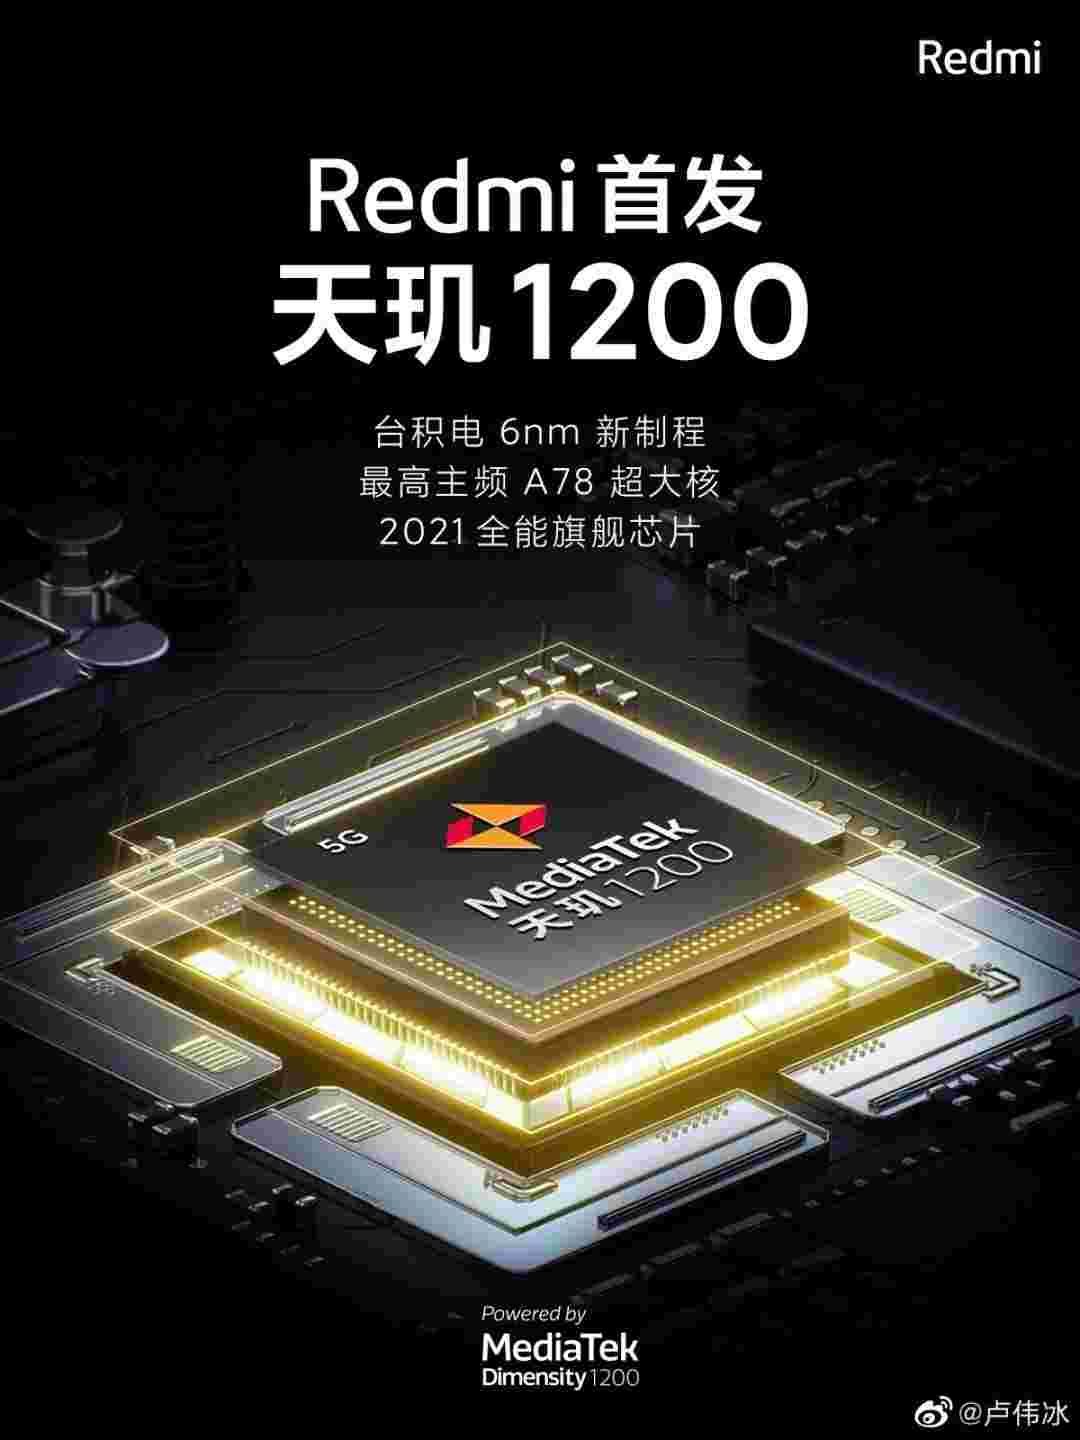 Redmi承诺效忠于1200，承诺在2021年的游戏电话